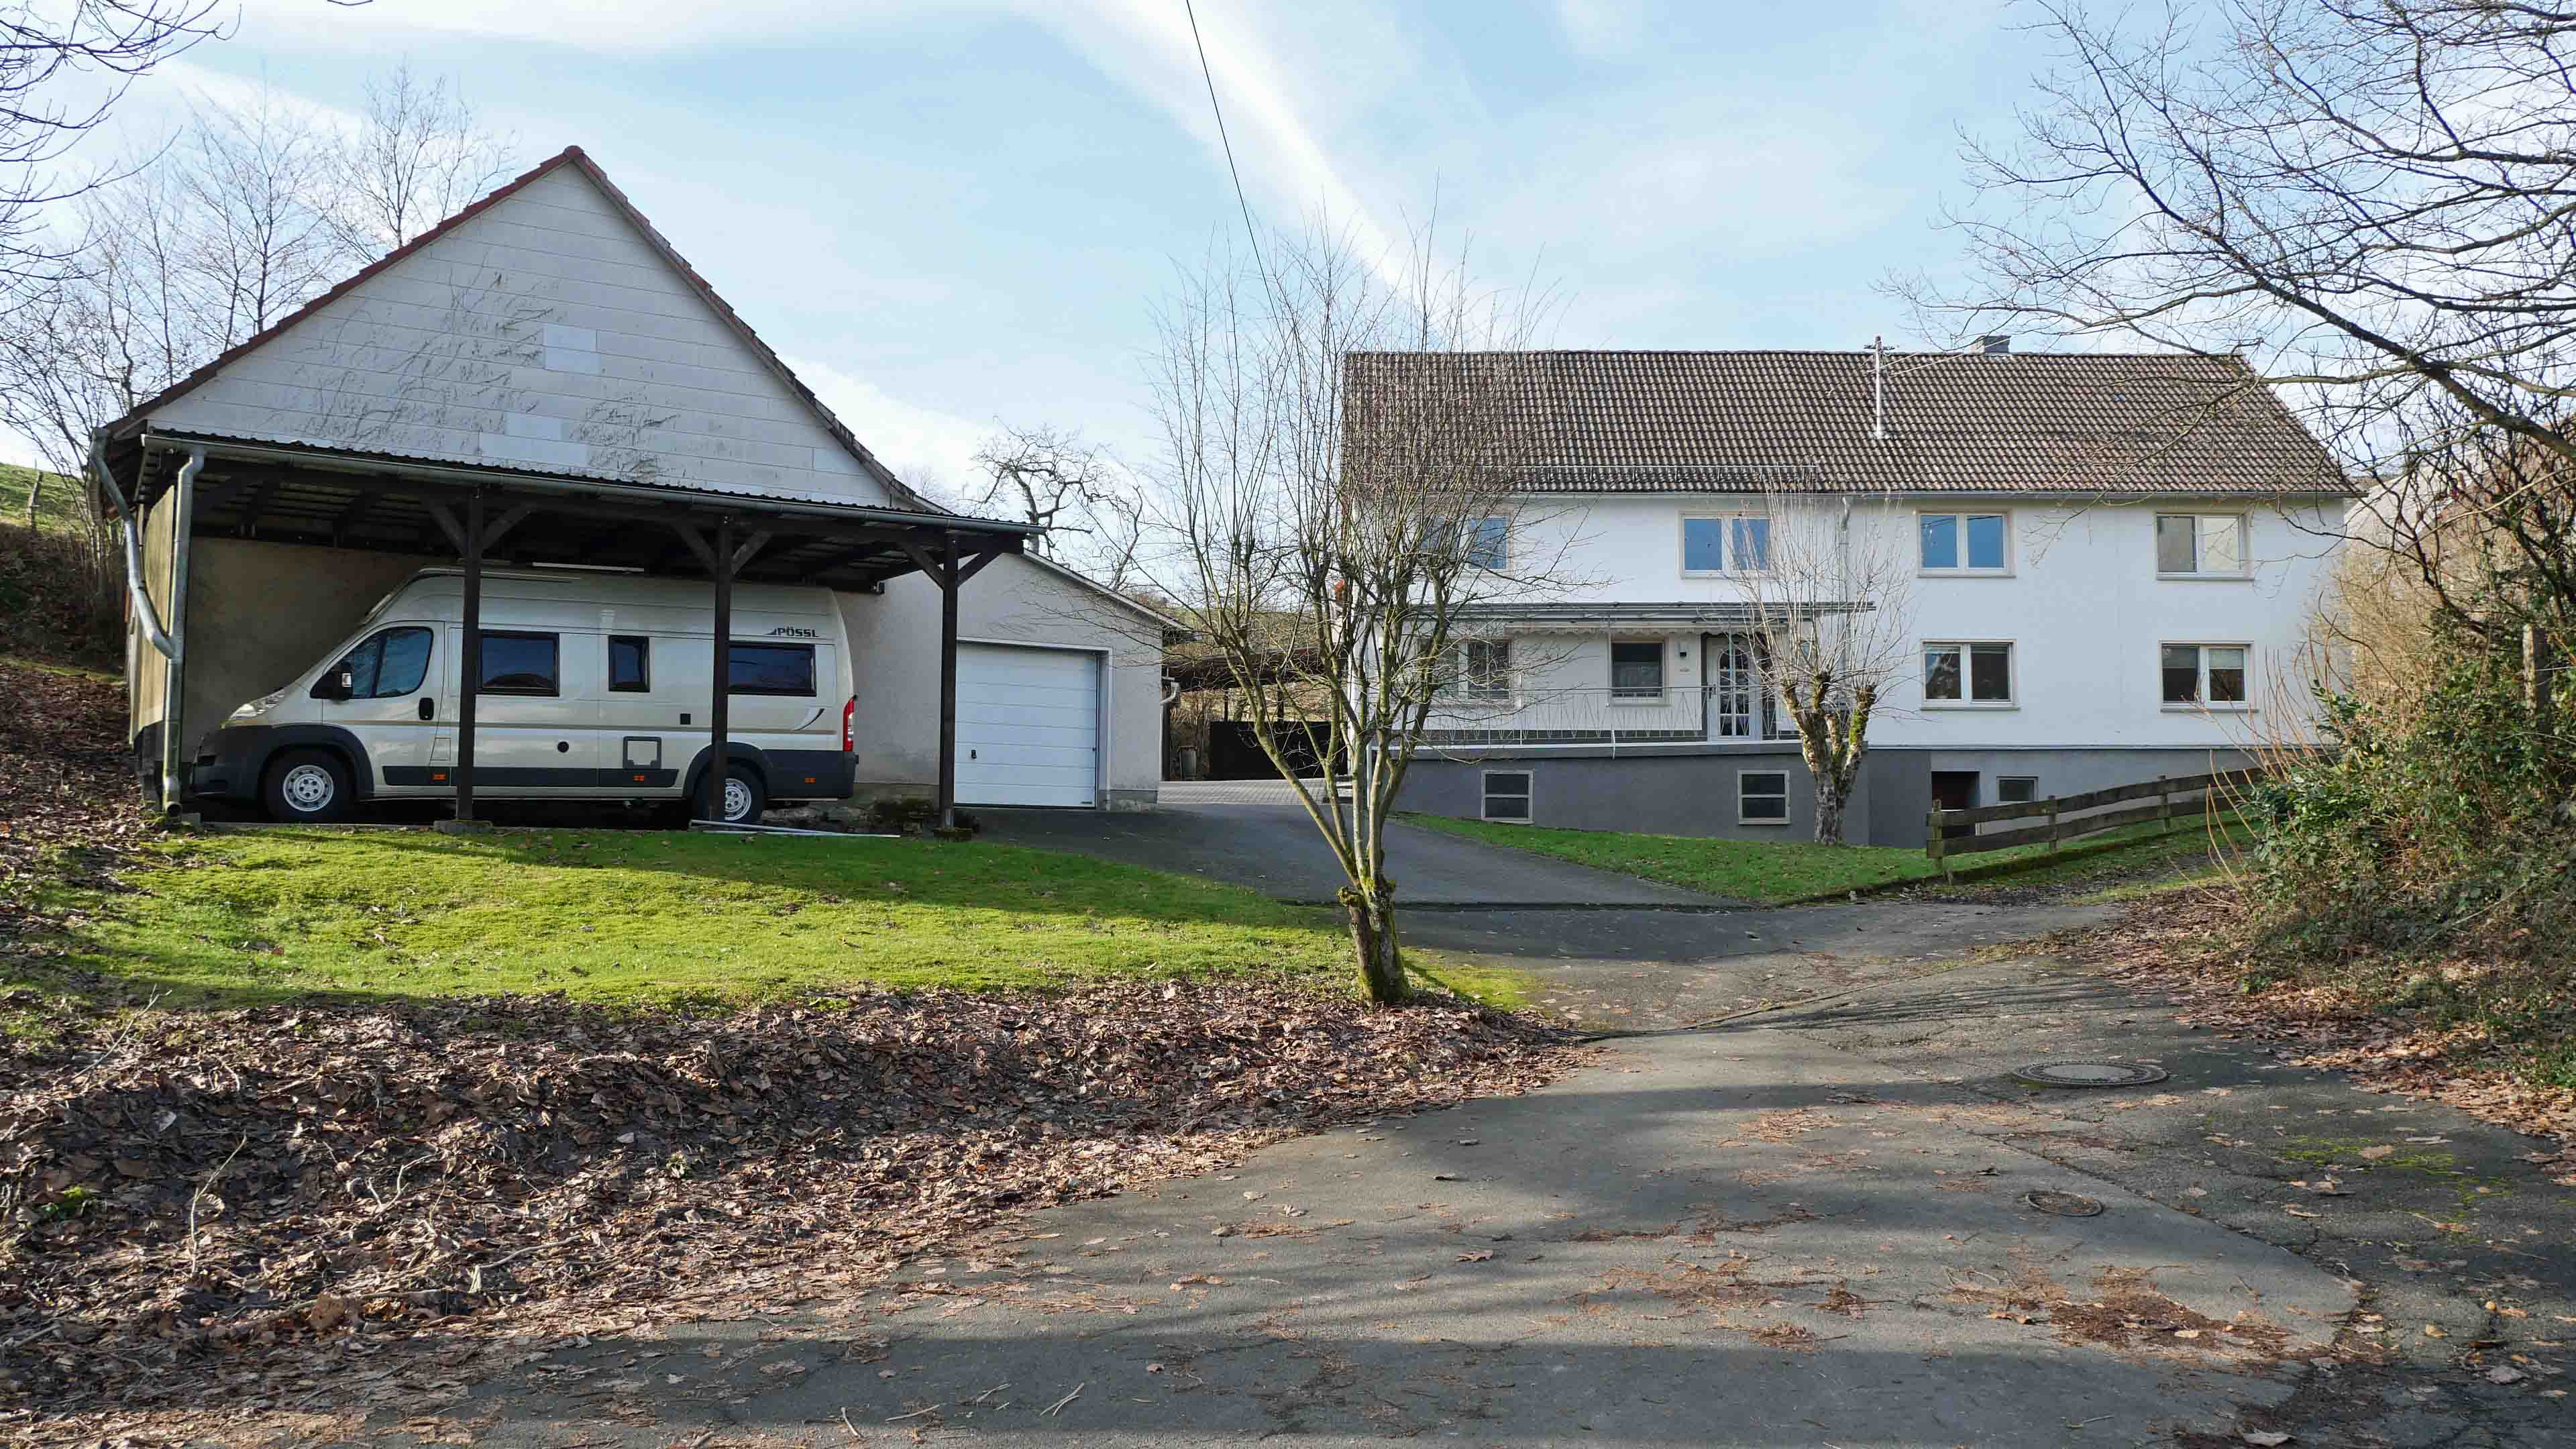 Morsbach-Ortseifen: Bauernhaus mit ELW, 2 Garagen, 2 Carports, Stall und 1,1 ha Weide, Frontansicht mit Zufahrt 